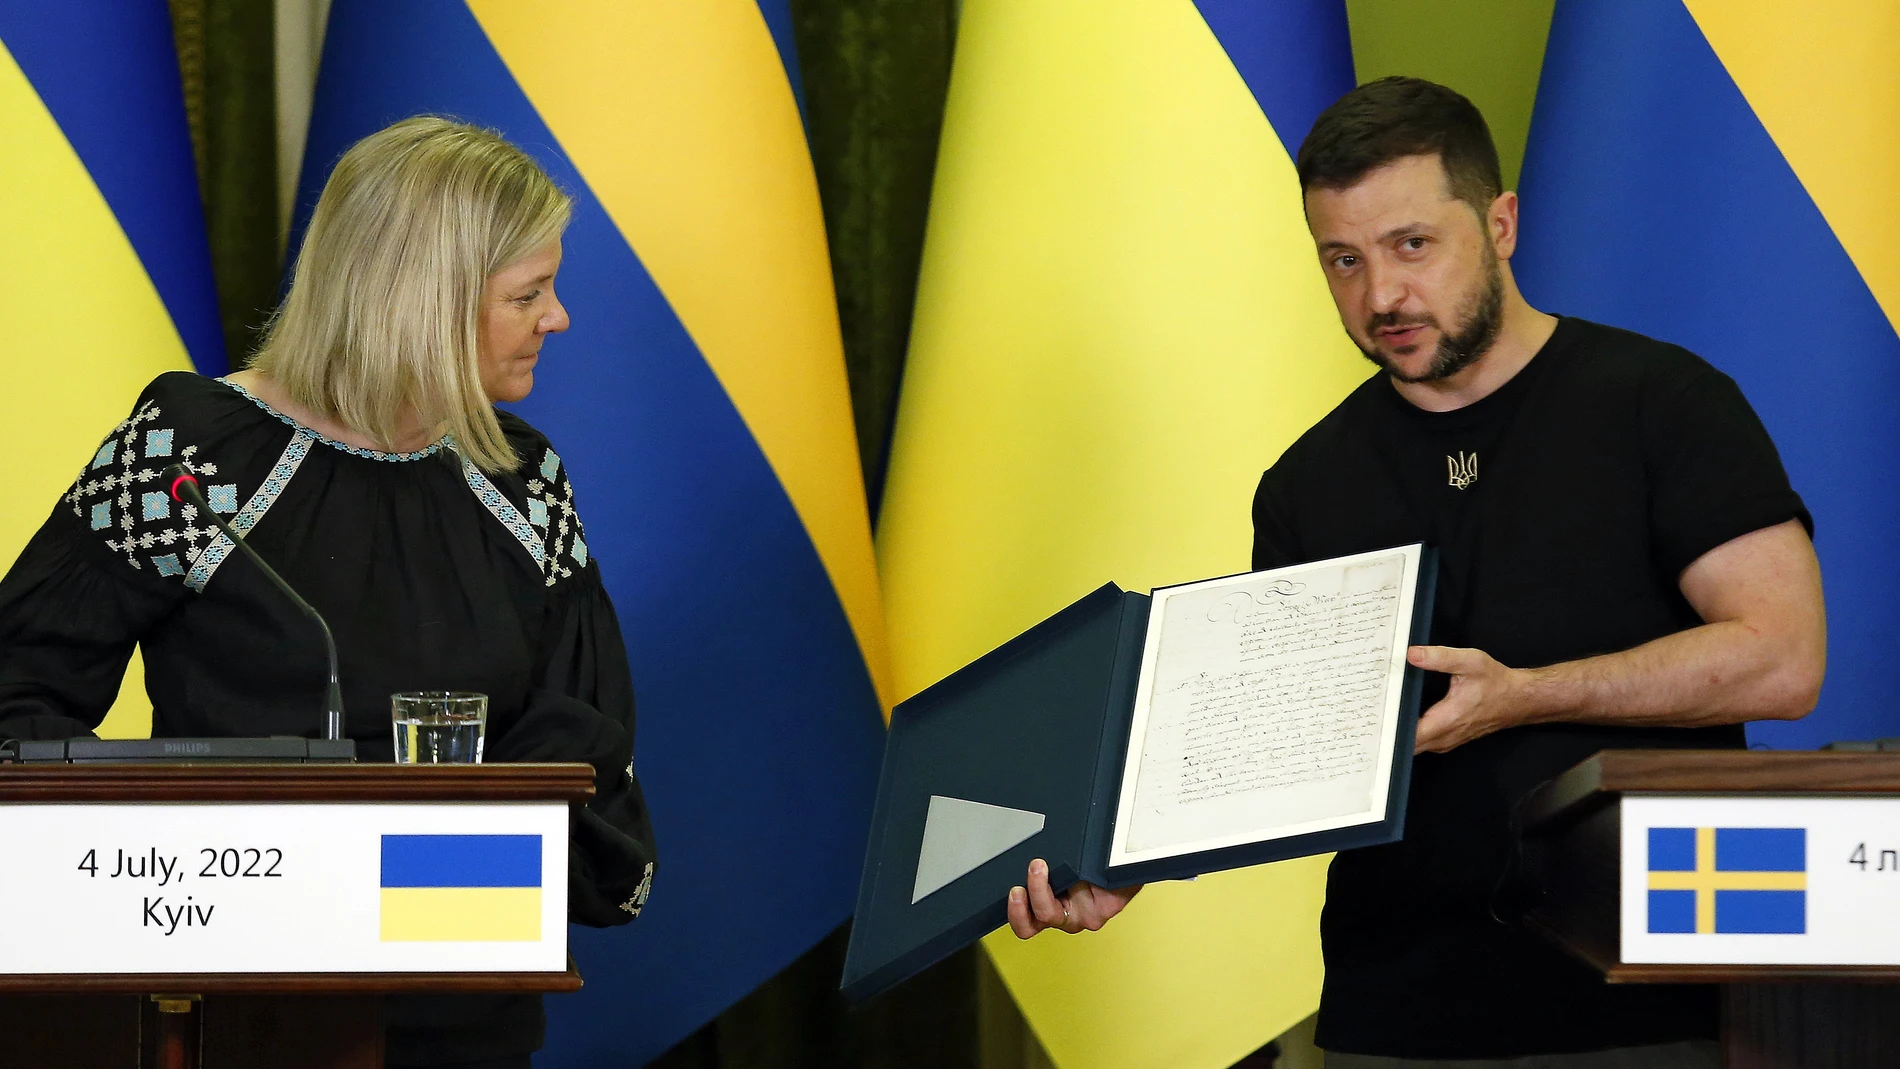 La primera ministra sueca, Magdalena Andersson, y el presidente de Ucrania, Volodomir Zelenski, en su rueda de prensa en Kyiv